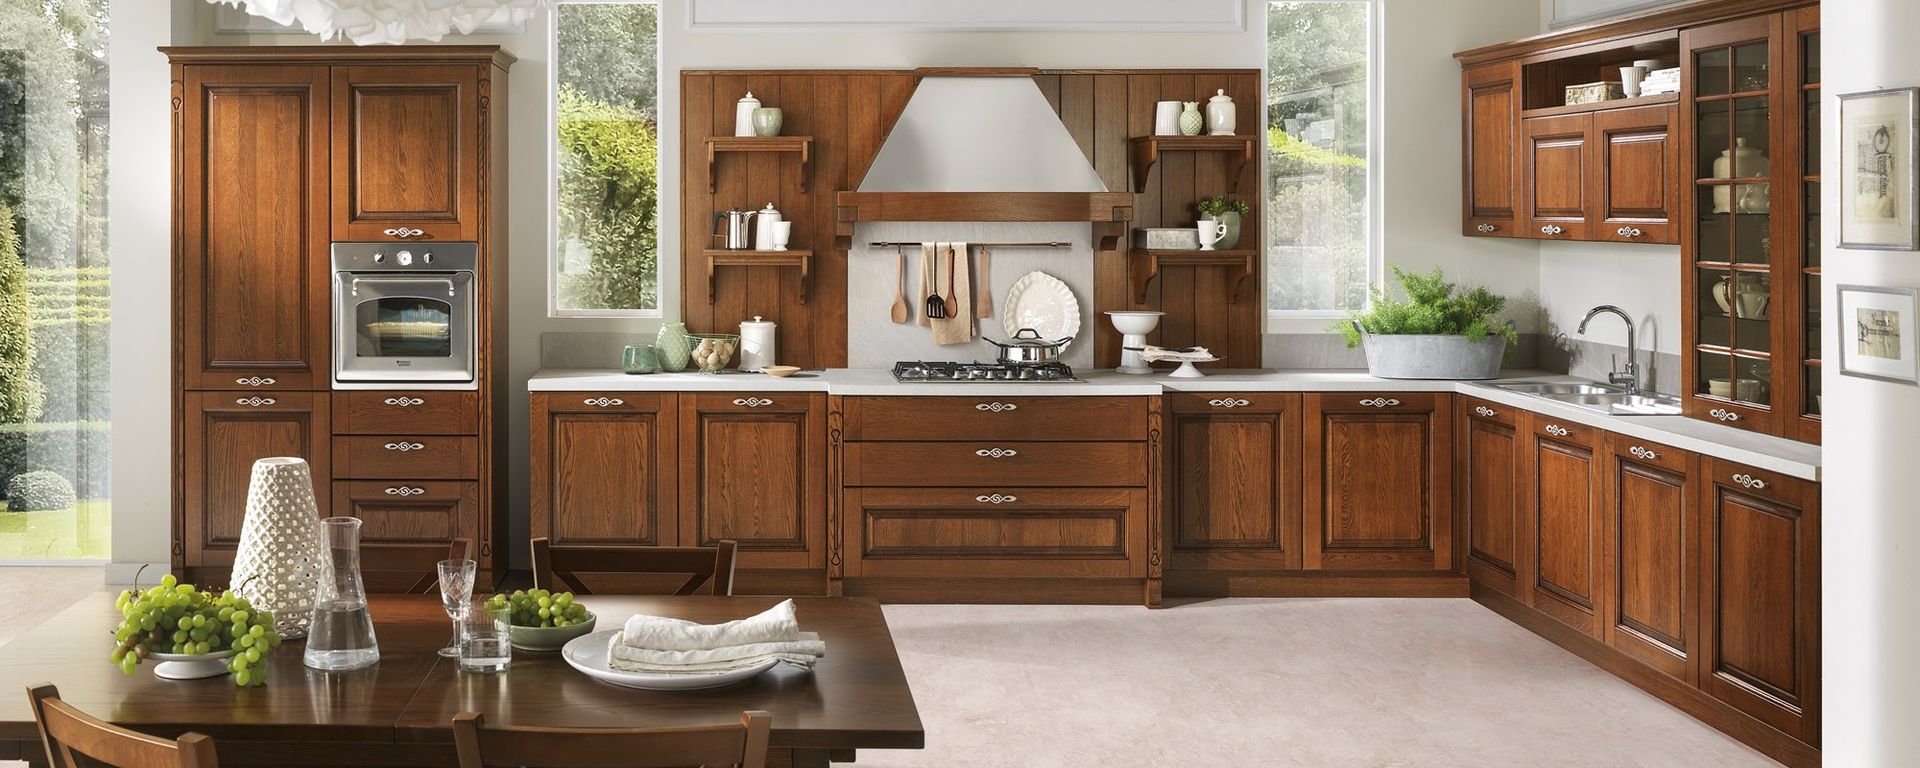 vista frontale di una cucina classica in legno con arredo